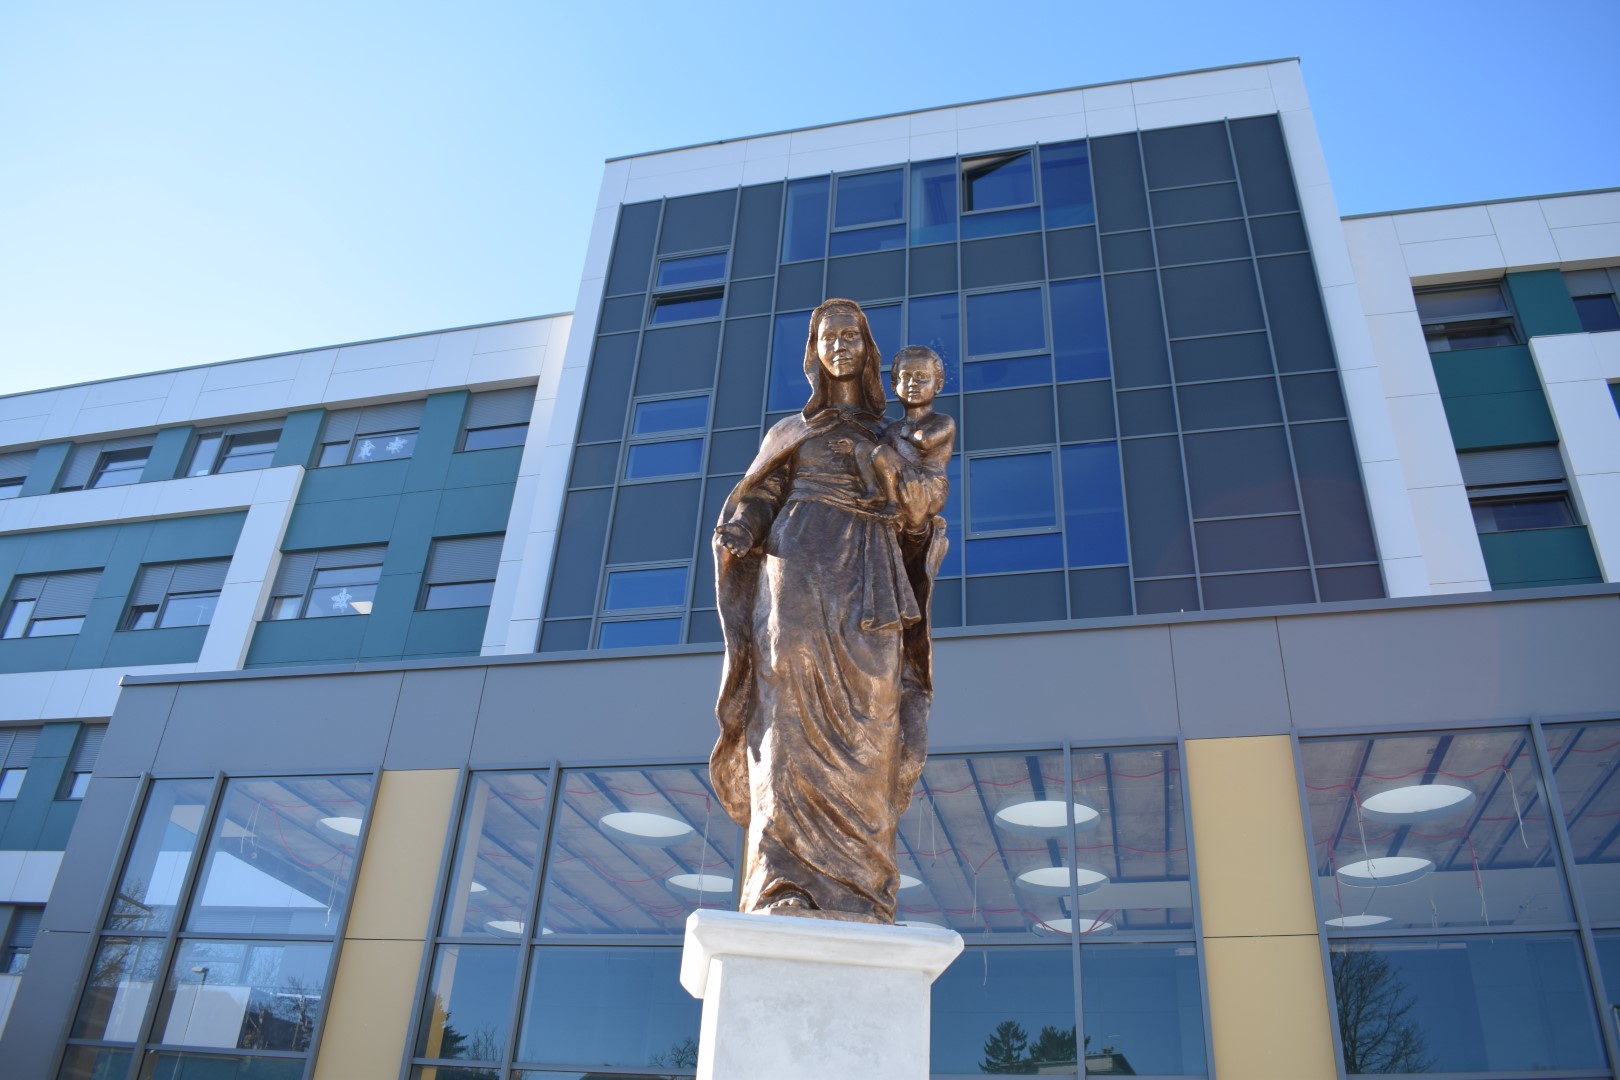 Zamjenik župana Mihael Jurić je u srijedu, 8. prosinca 2021. godine, u krugu Opće bolnice „Dr. Ivo Pedišić“ Sisak nazočio blagoslovu brončanog kipa Blažene Djevice Marije s djetetom Isusom, djela akademskog kipara Tomislava Kršnjavog.